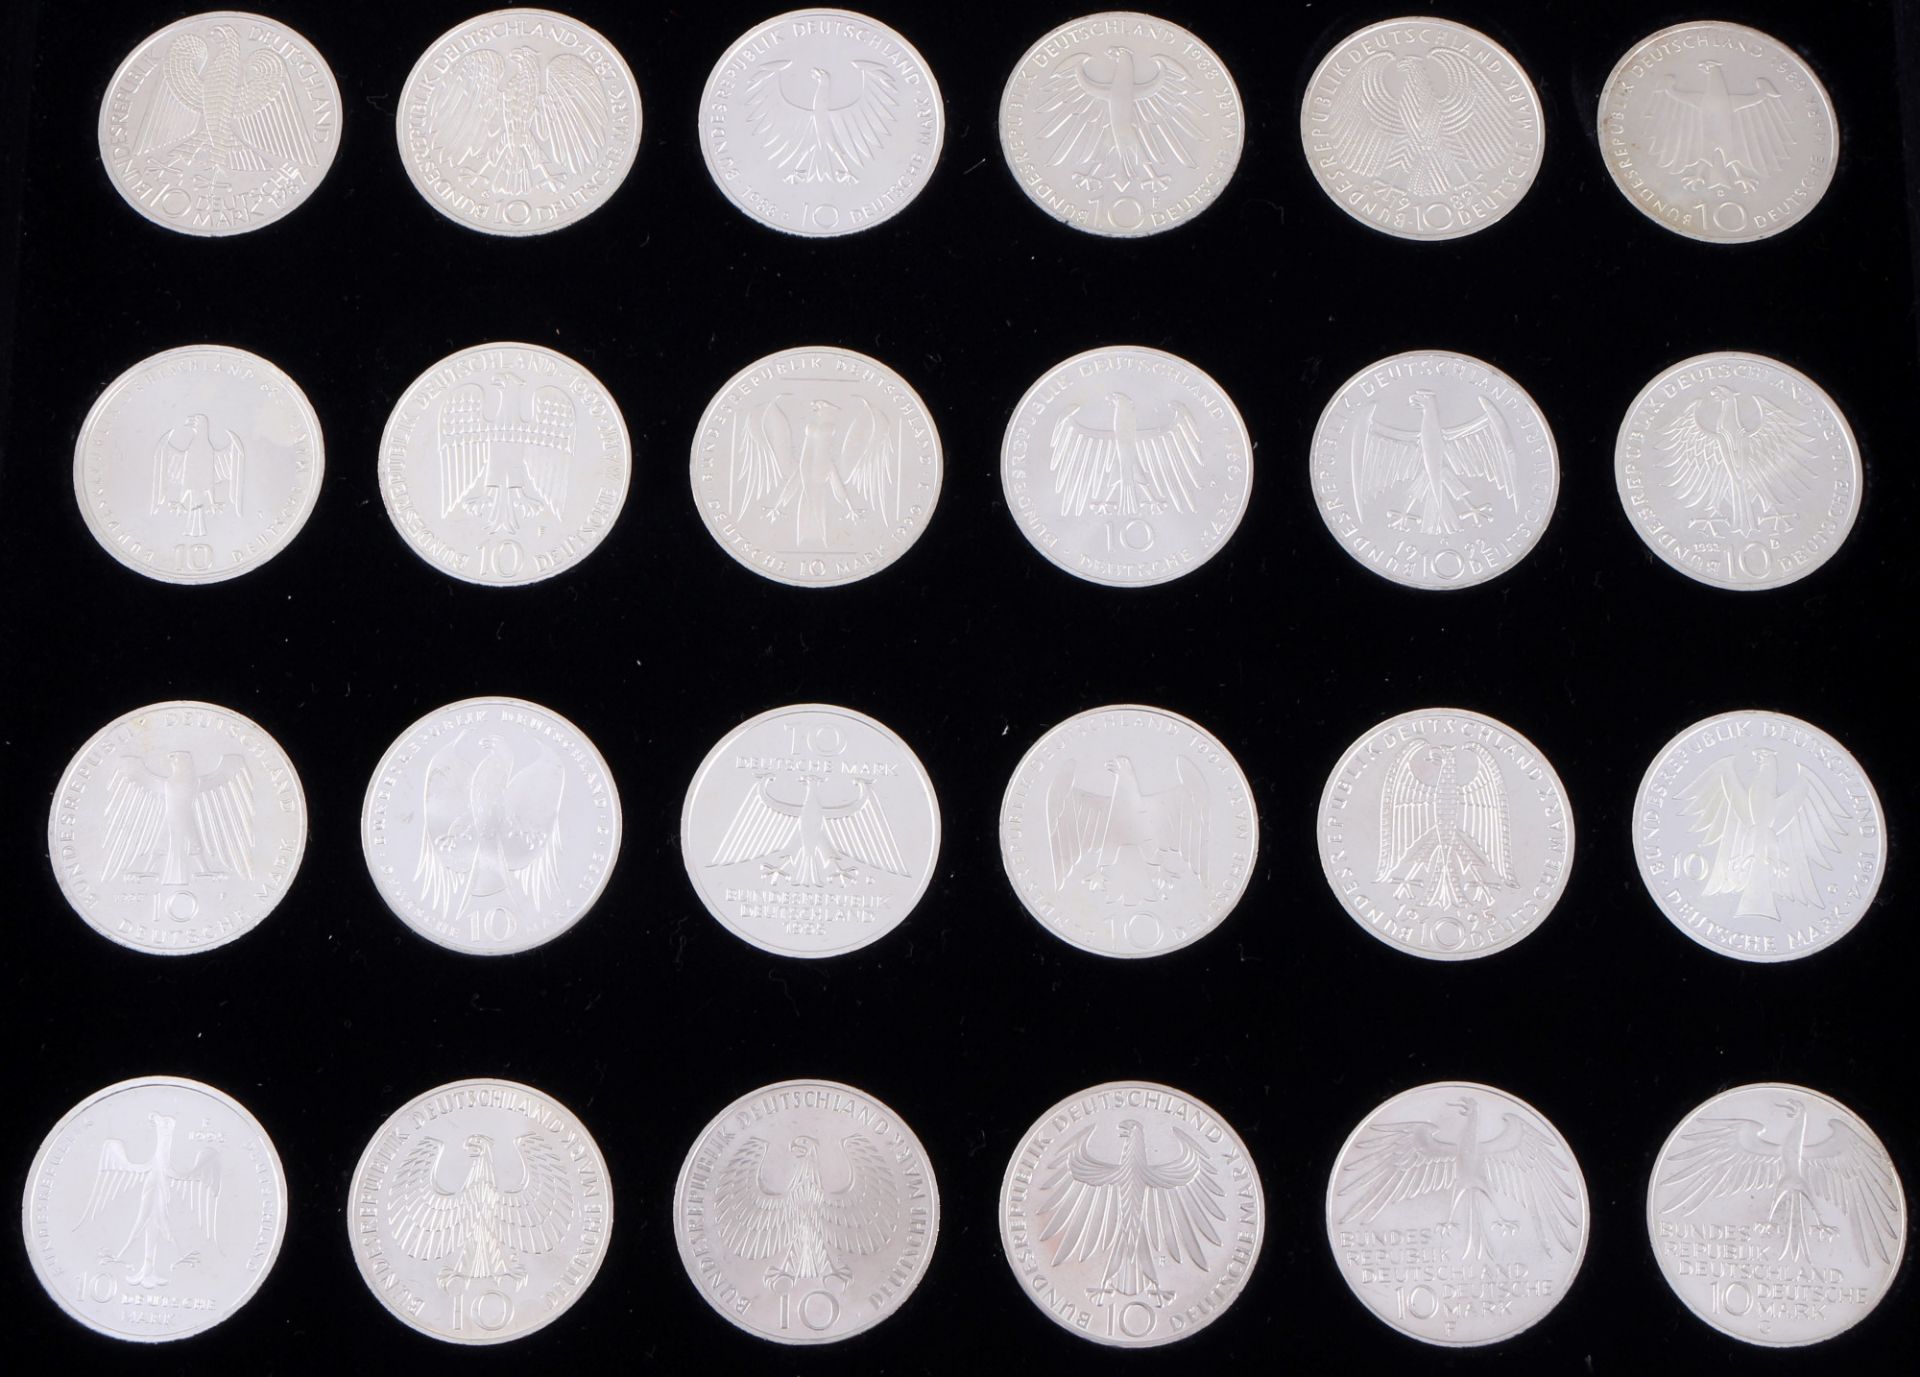 48 silver commemorative coins - 10 german mark, Silber Gedenkmünzen - 10 Deutsche Mark, - Image 4 of 6